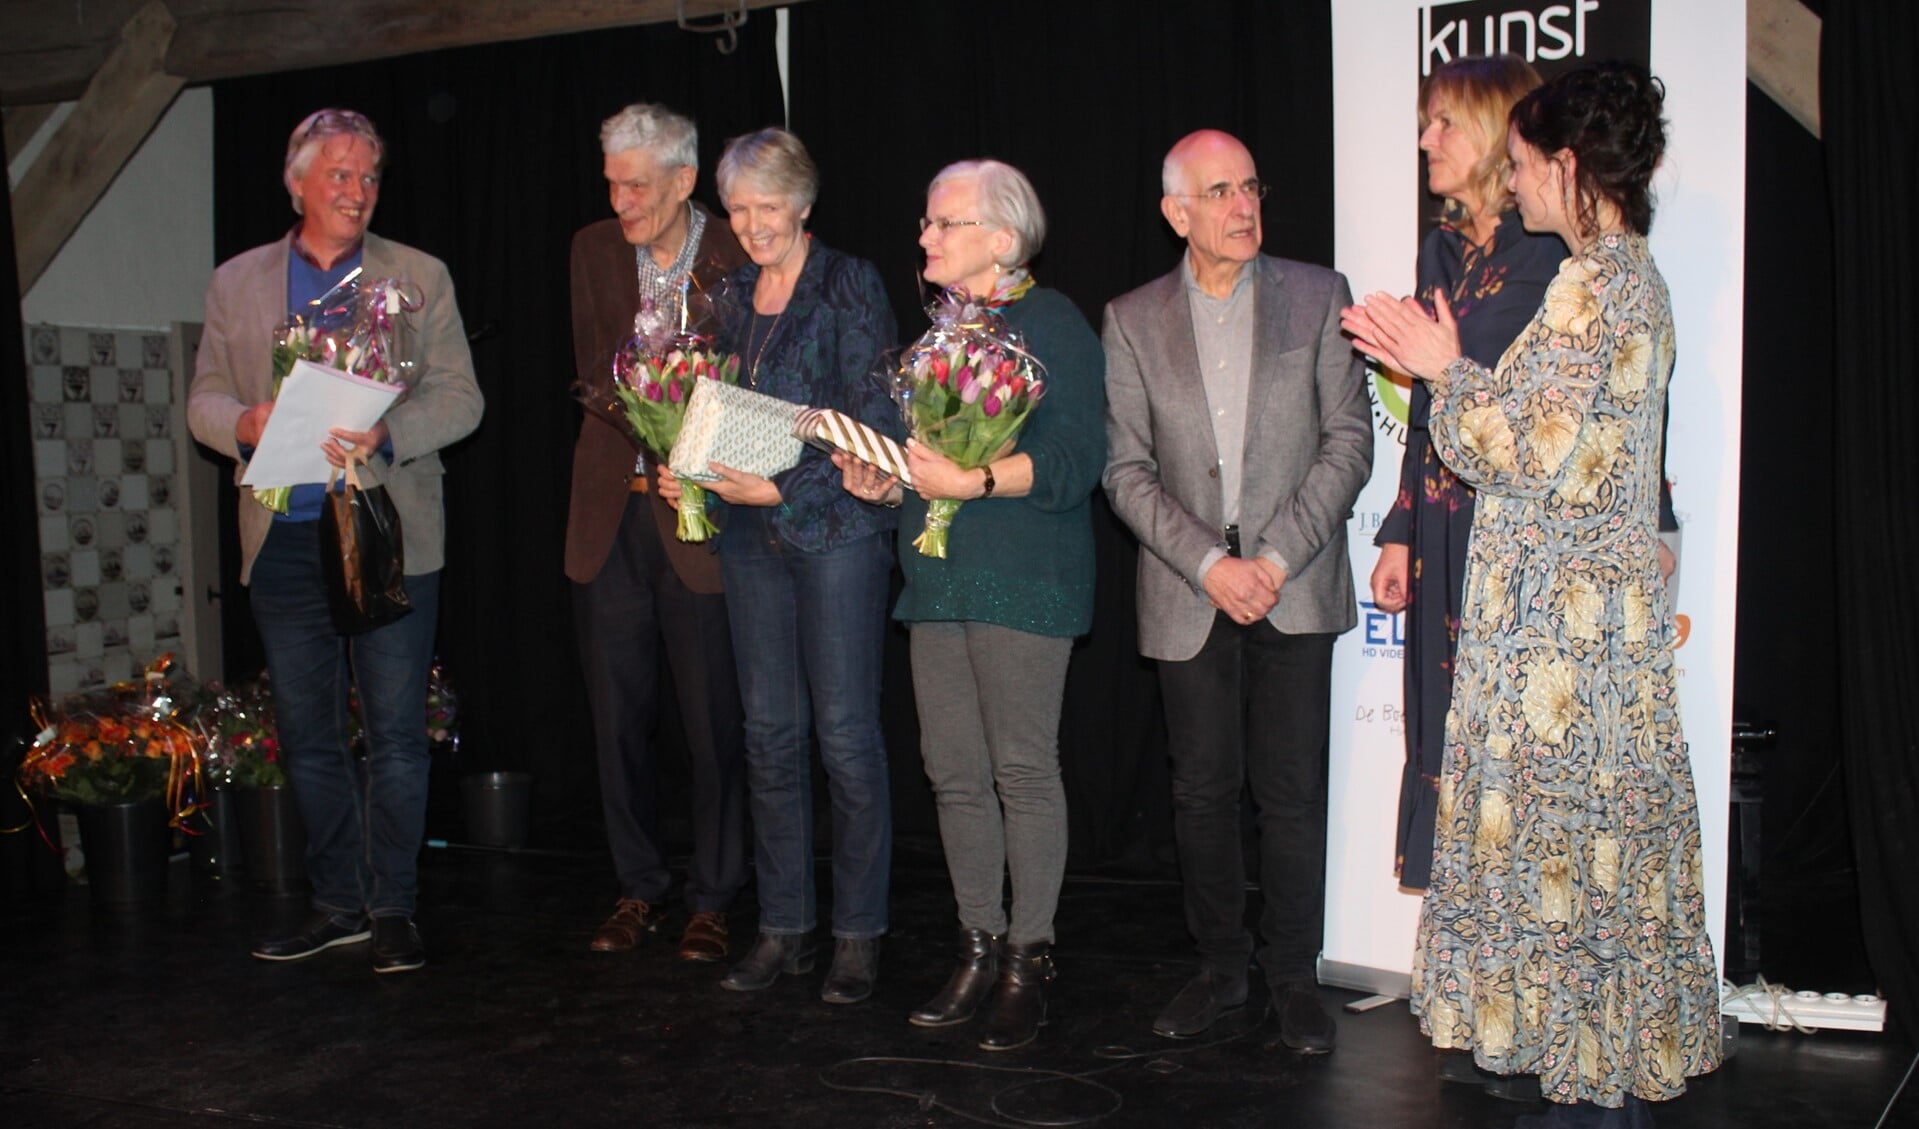 Links de prijswinnaar en in het midden naast Frits Spits Dini Hauptmeijer-Greiving, die de derde prijs won.